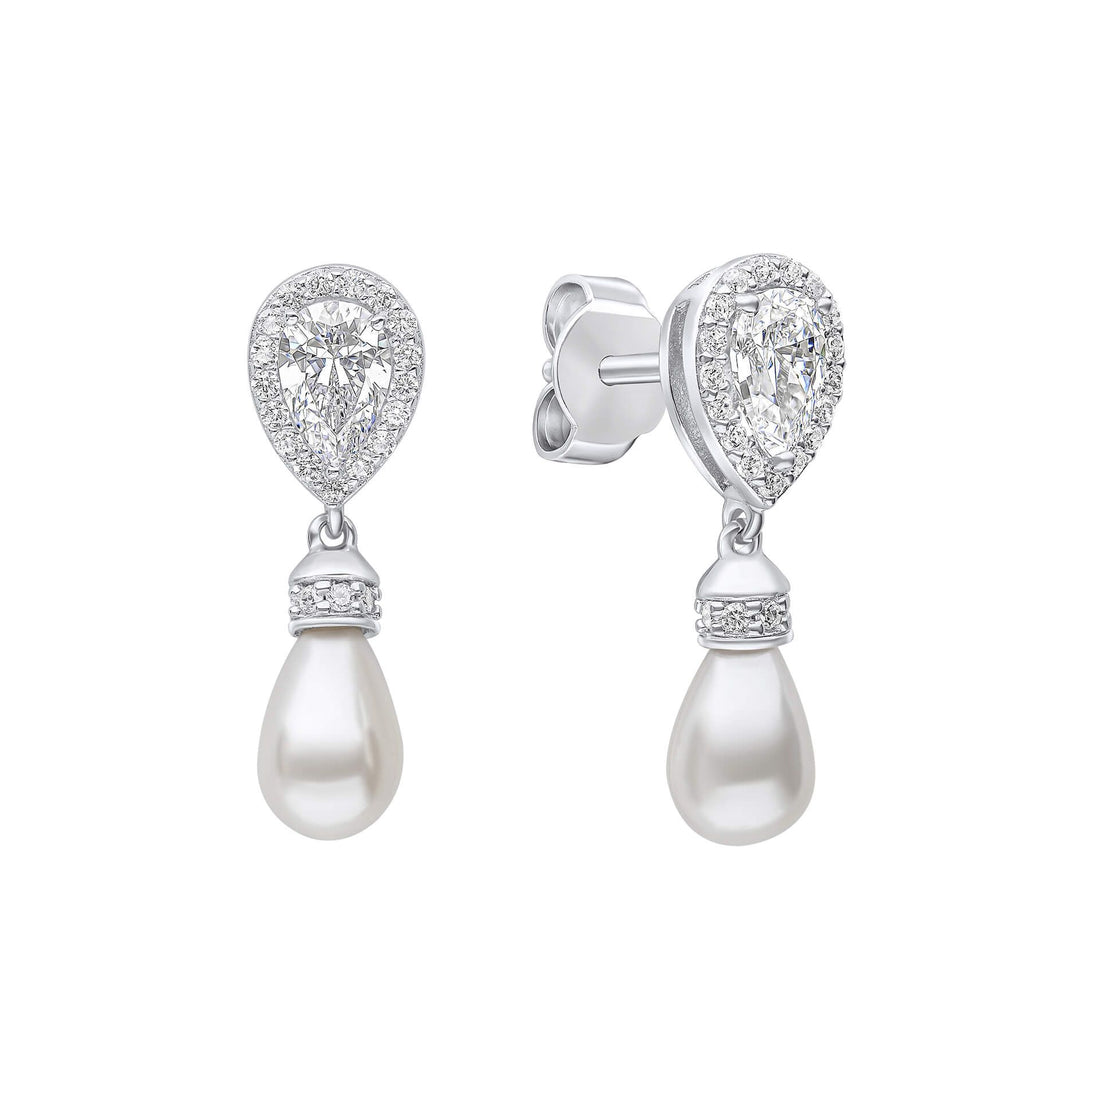 Silver Teardrop Zirconia Earrings with Shell Pearl Drop